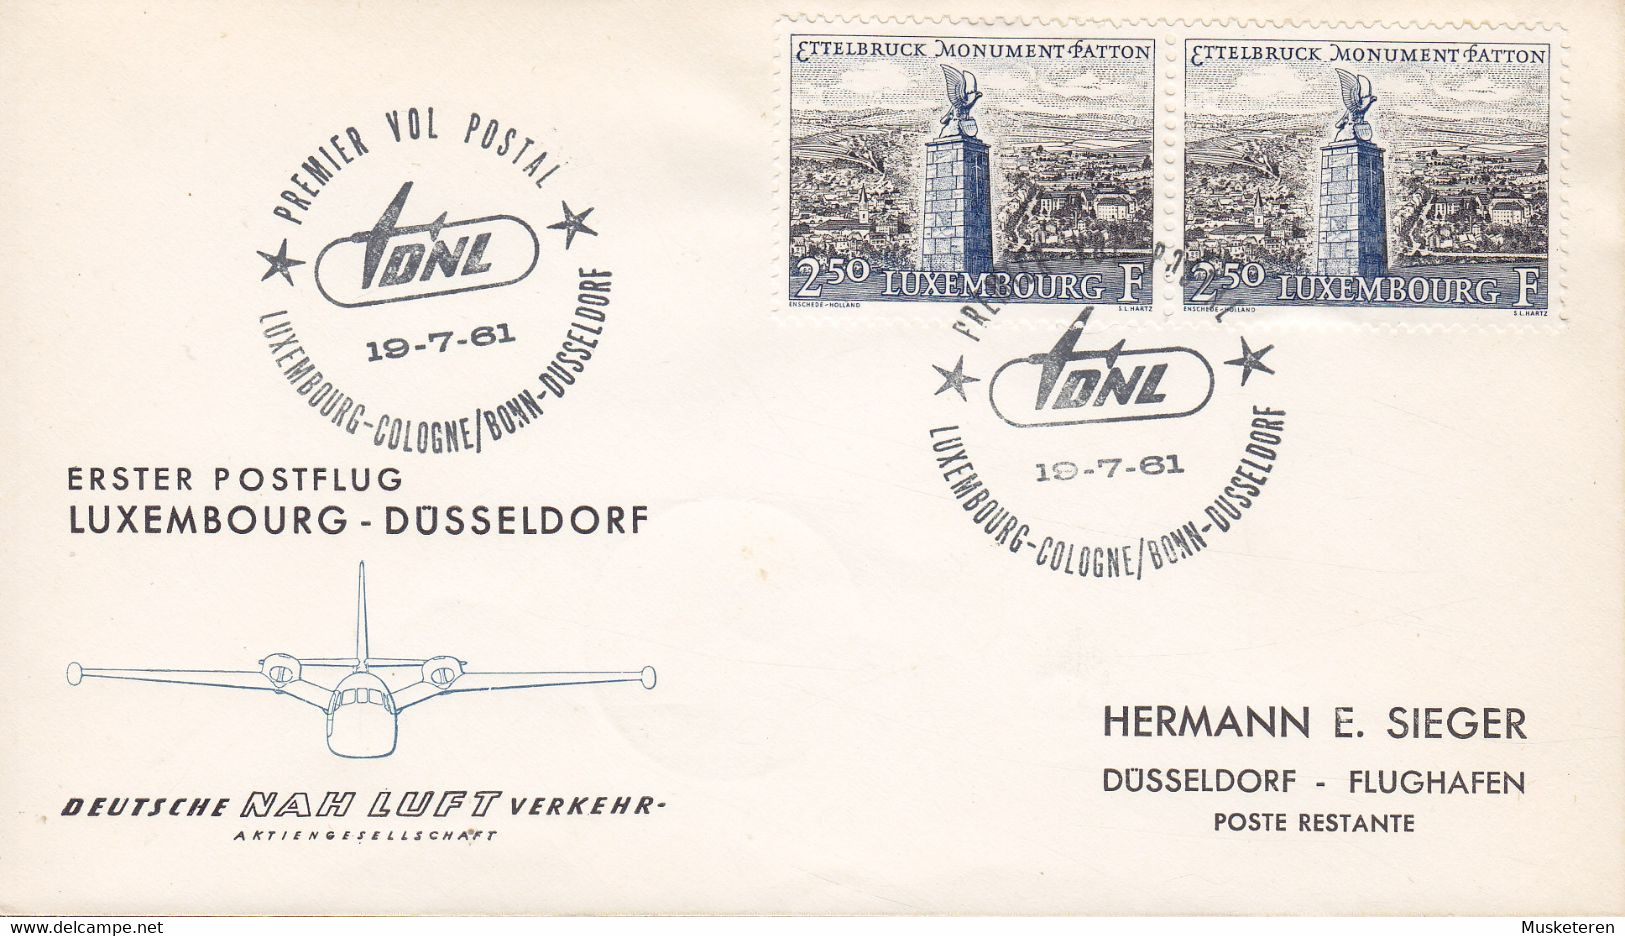 Luxembourg Deutsche NAH LUFT Verkehr First Flight Premier Vol Postal LUXEMBOURG-DÜSSELDORF 19.7.1961 Cover Brief - Covers & Documents